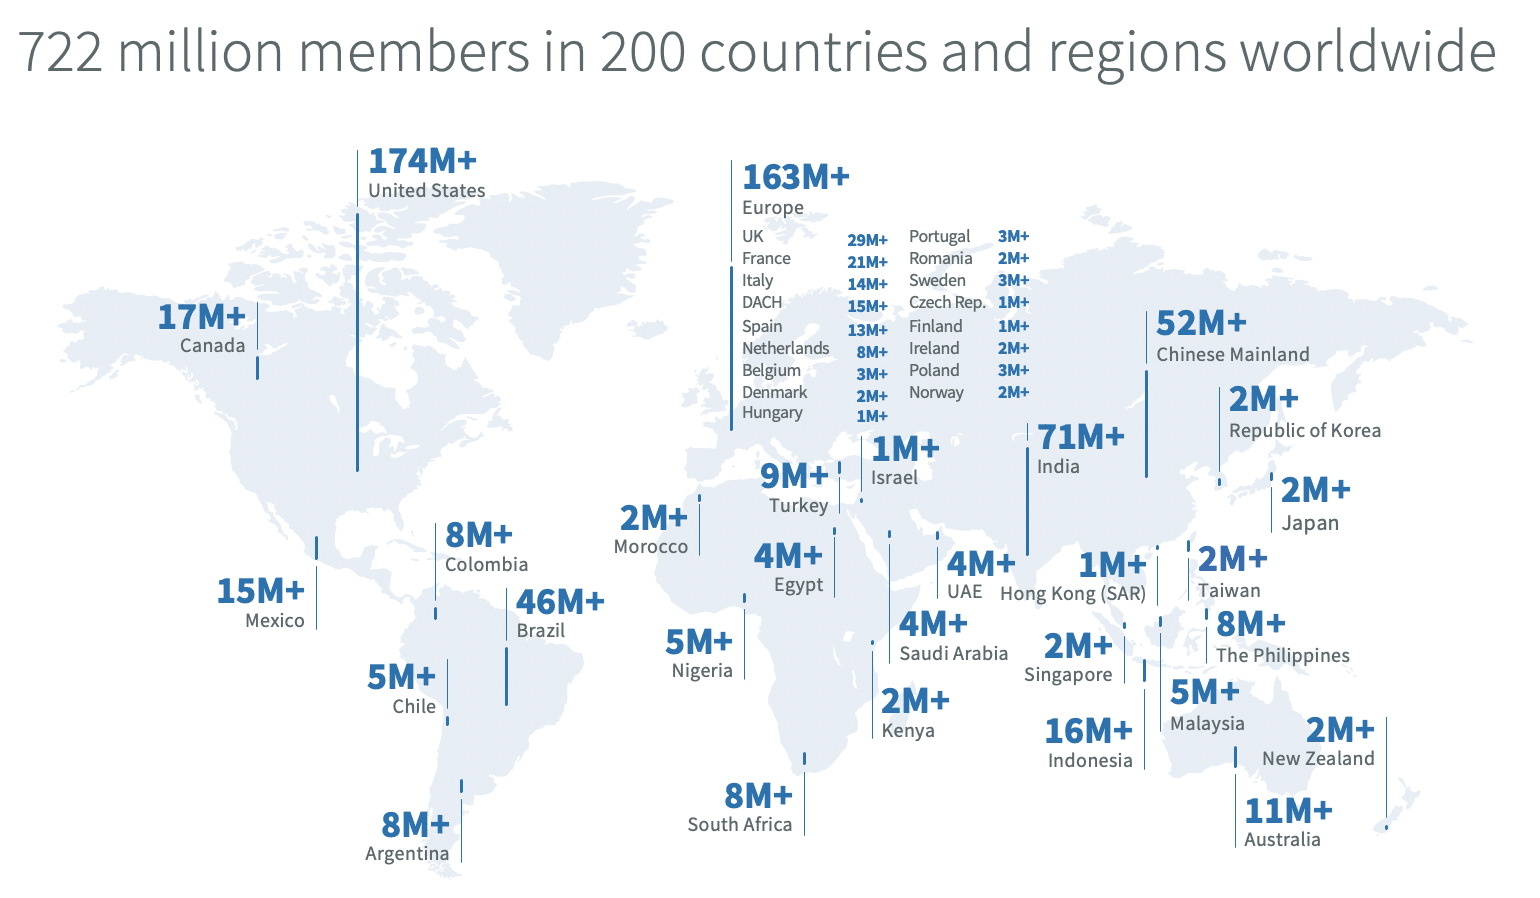 LinkedIn global membership numbers by country